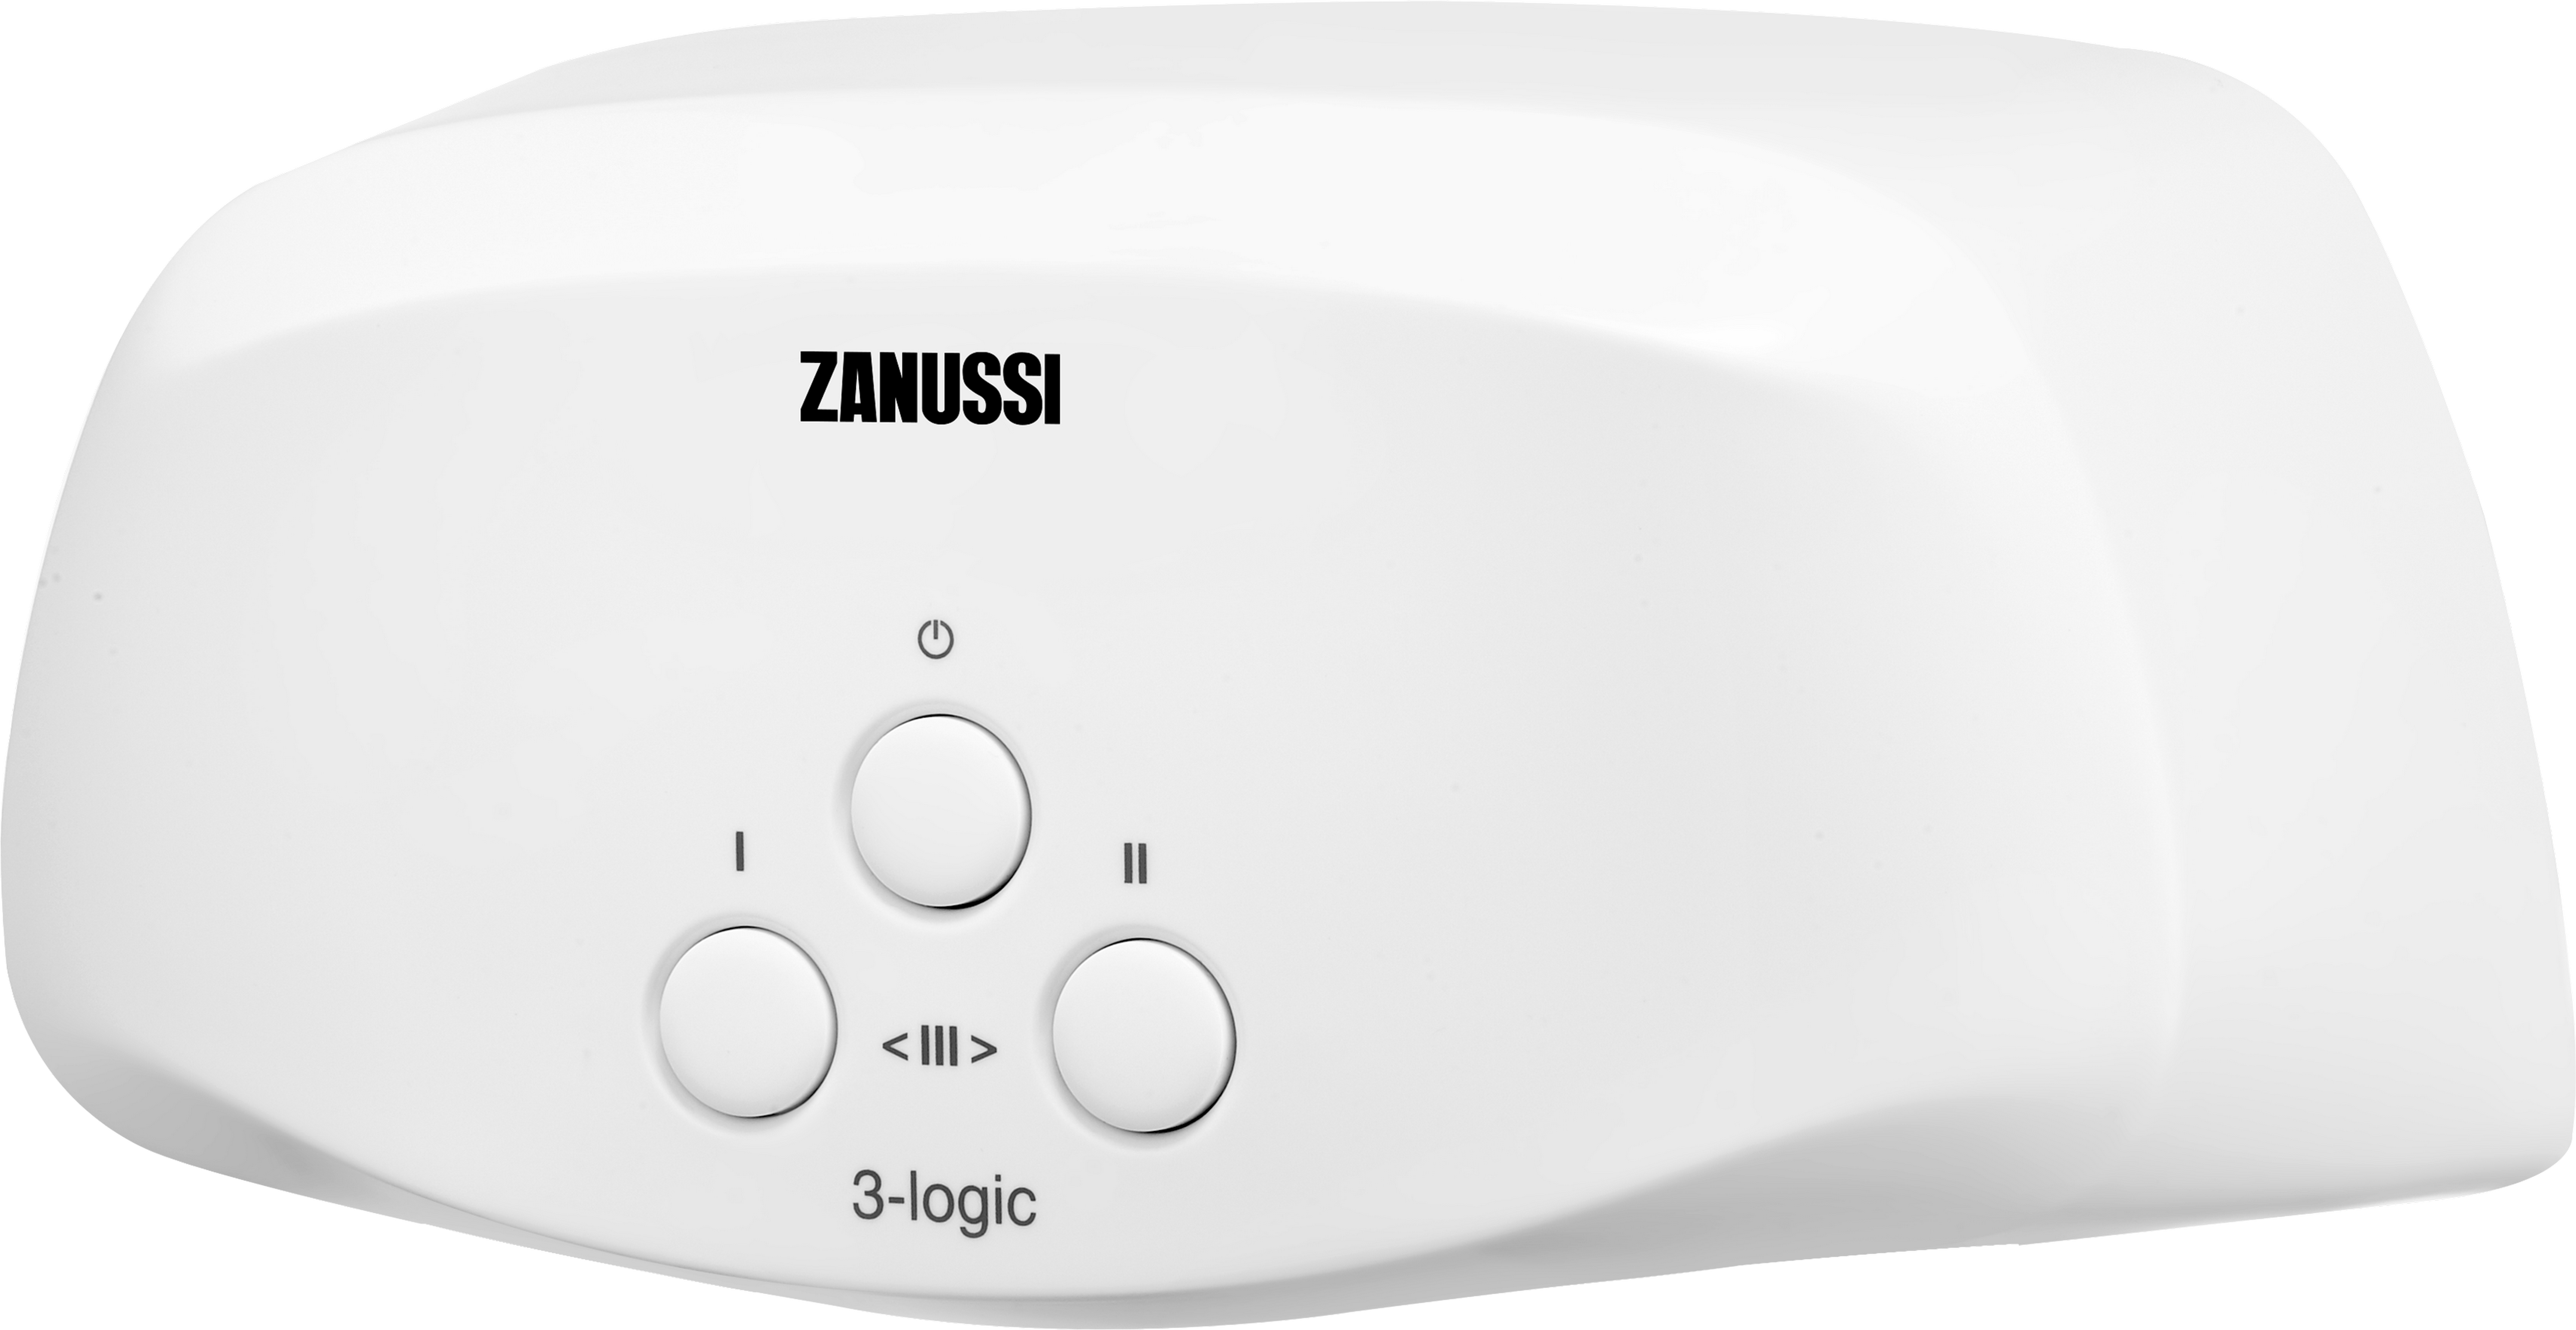 Проточный водонагреватель Zanussi 3-logic S (5,5 кВт) цена 0.00 грн - фотография 2